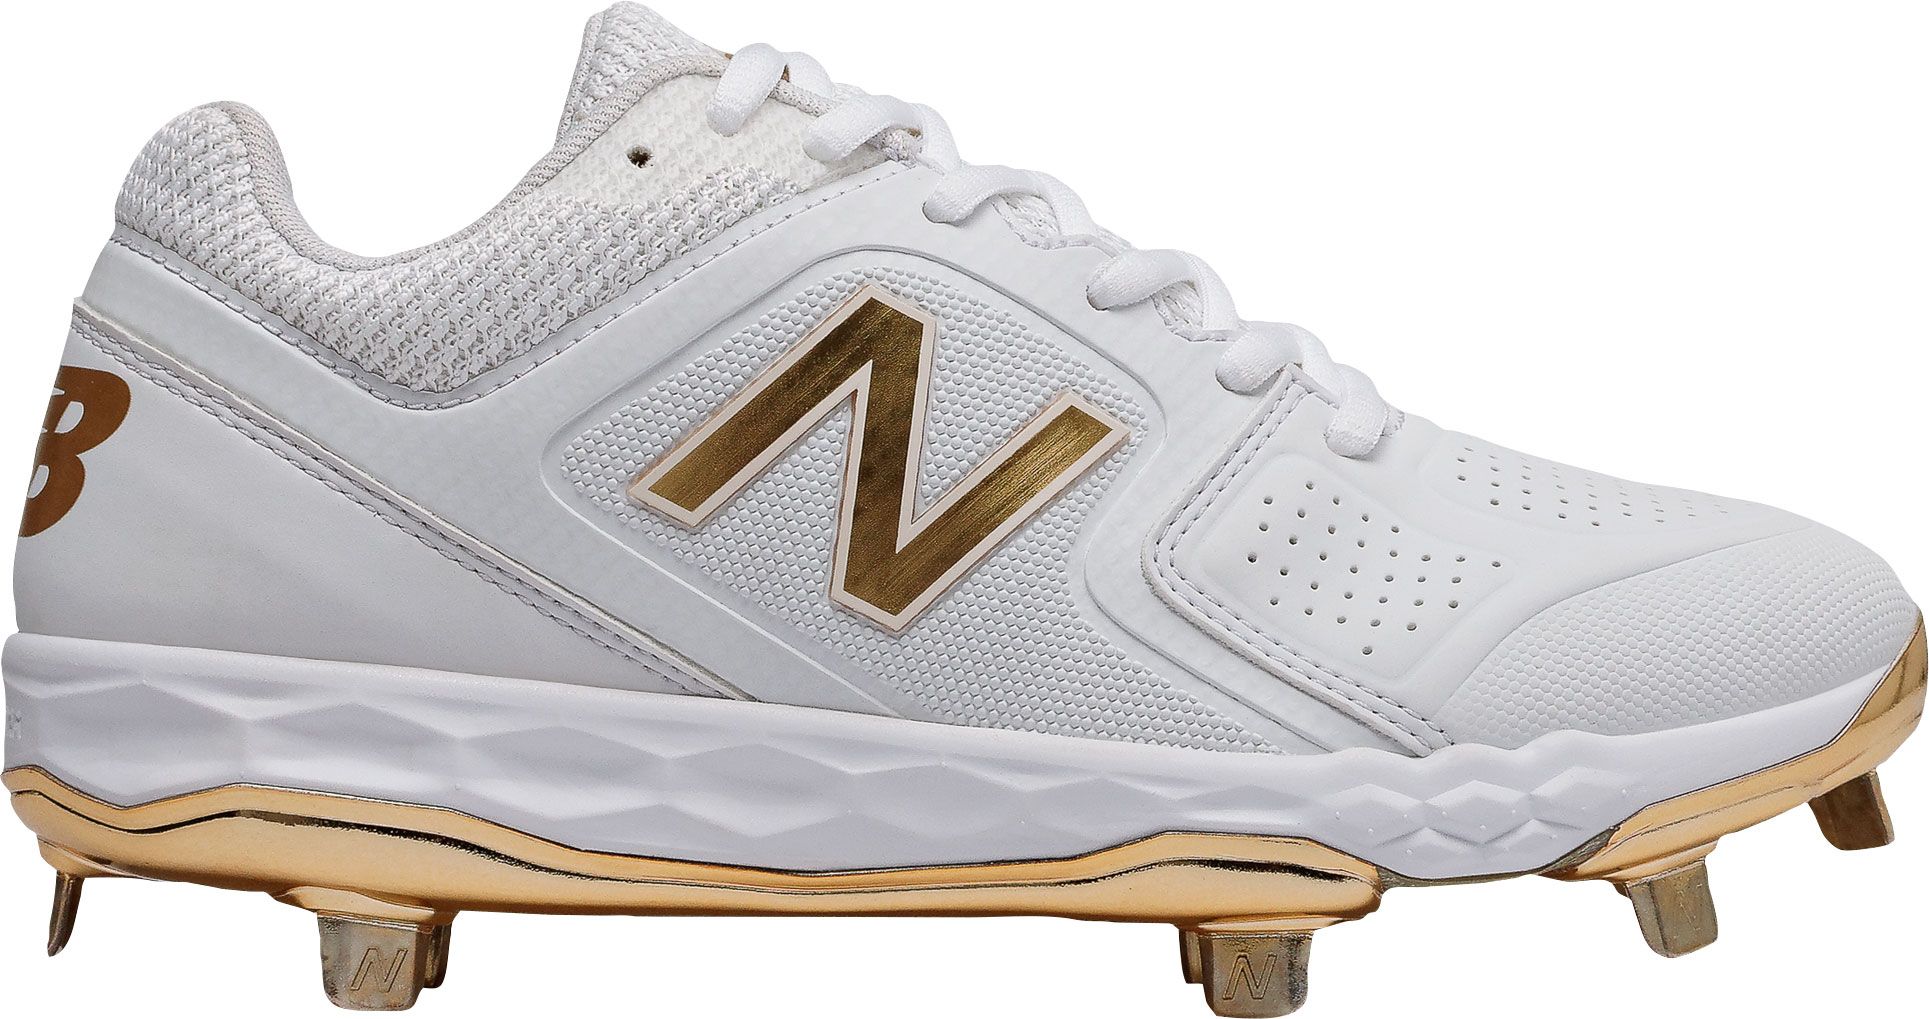 white new balance softball cleats